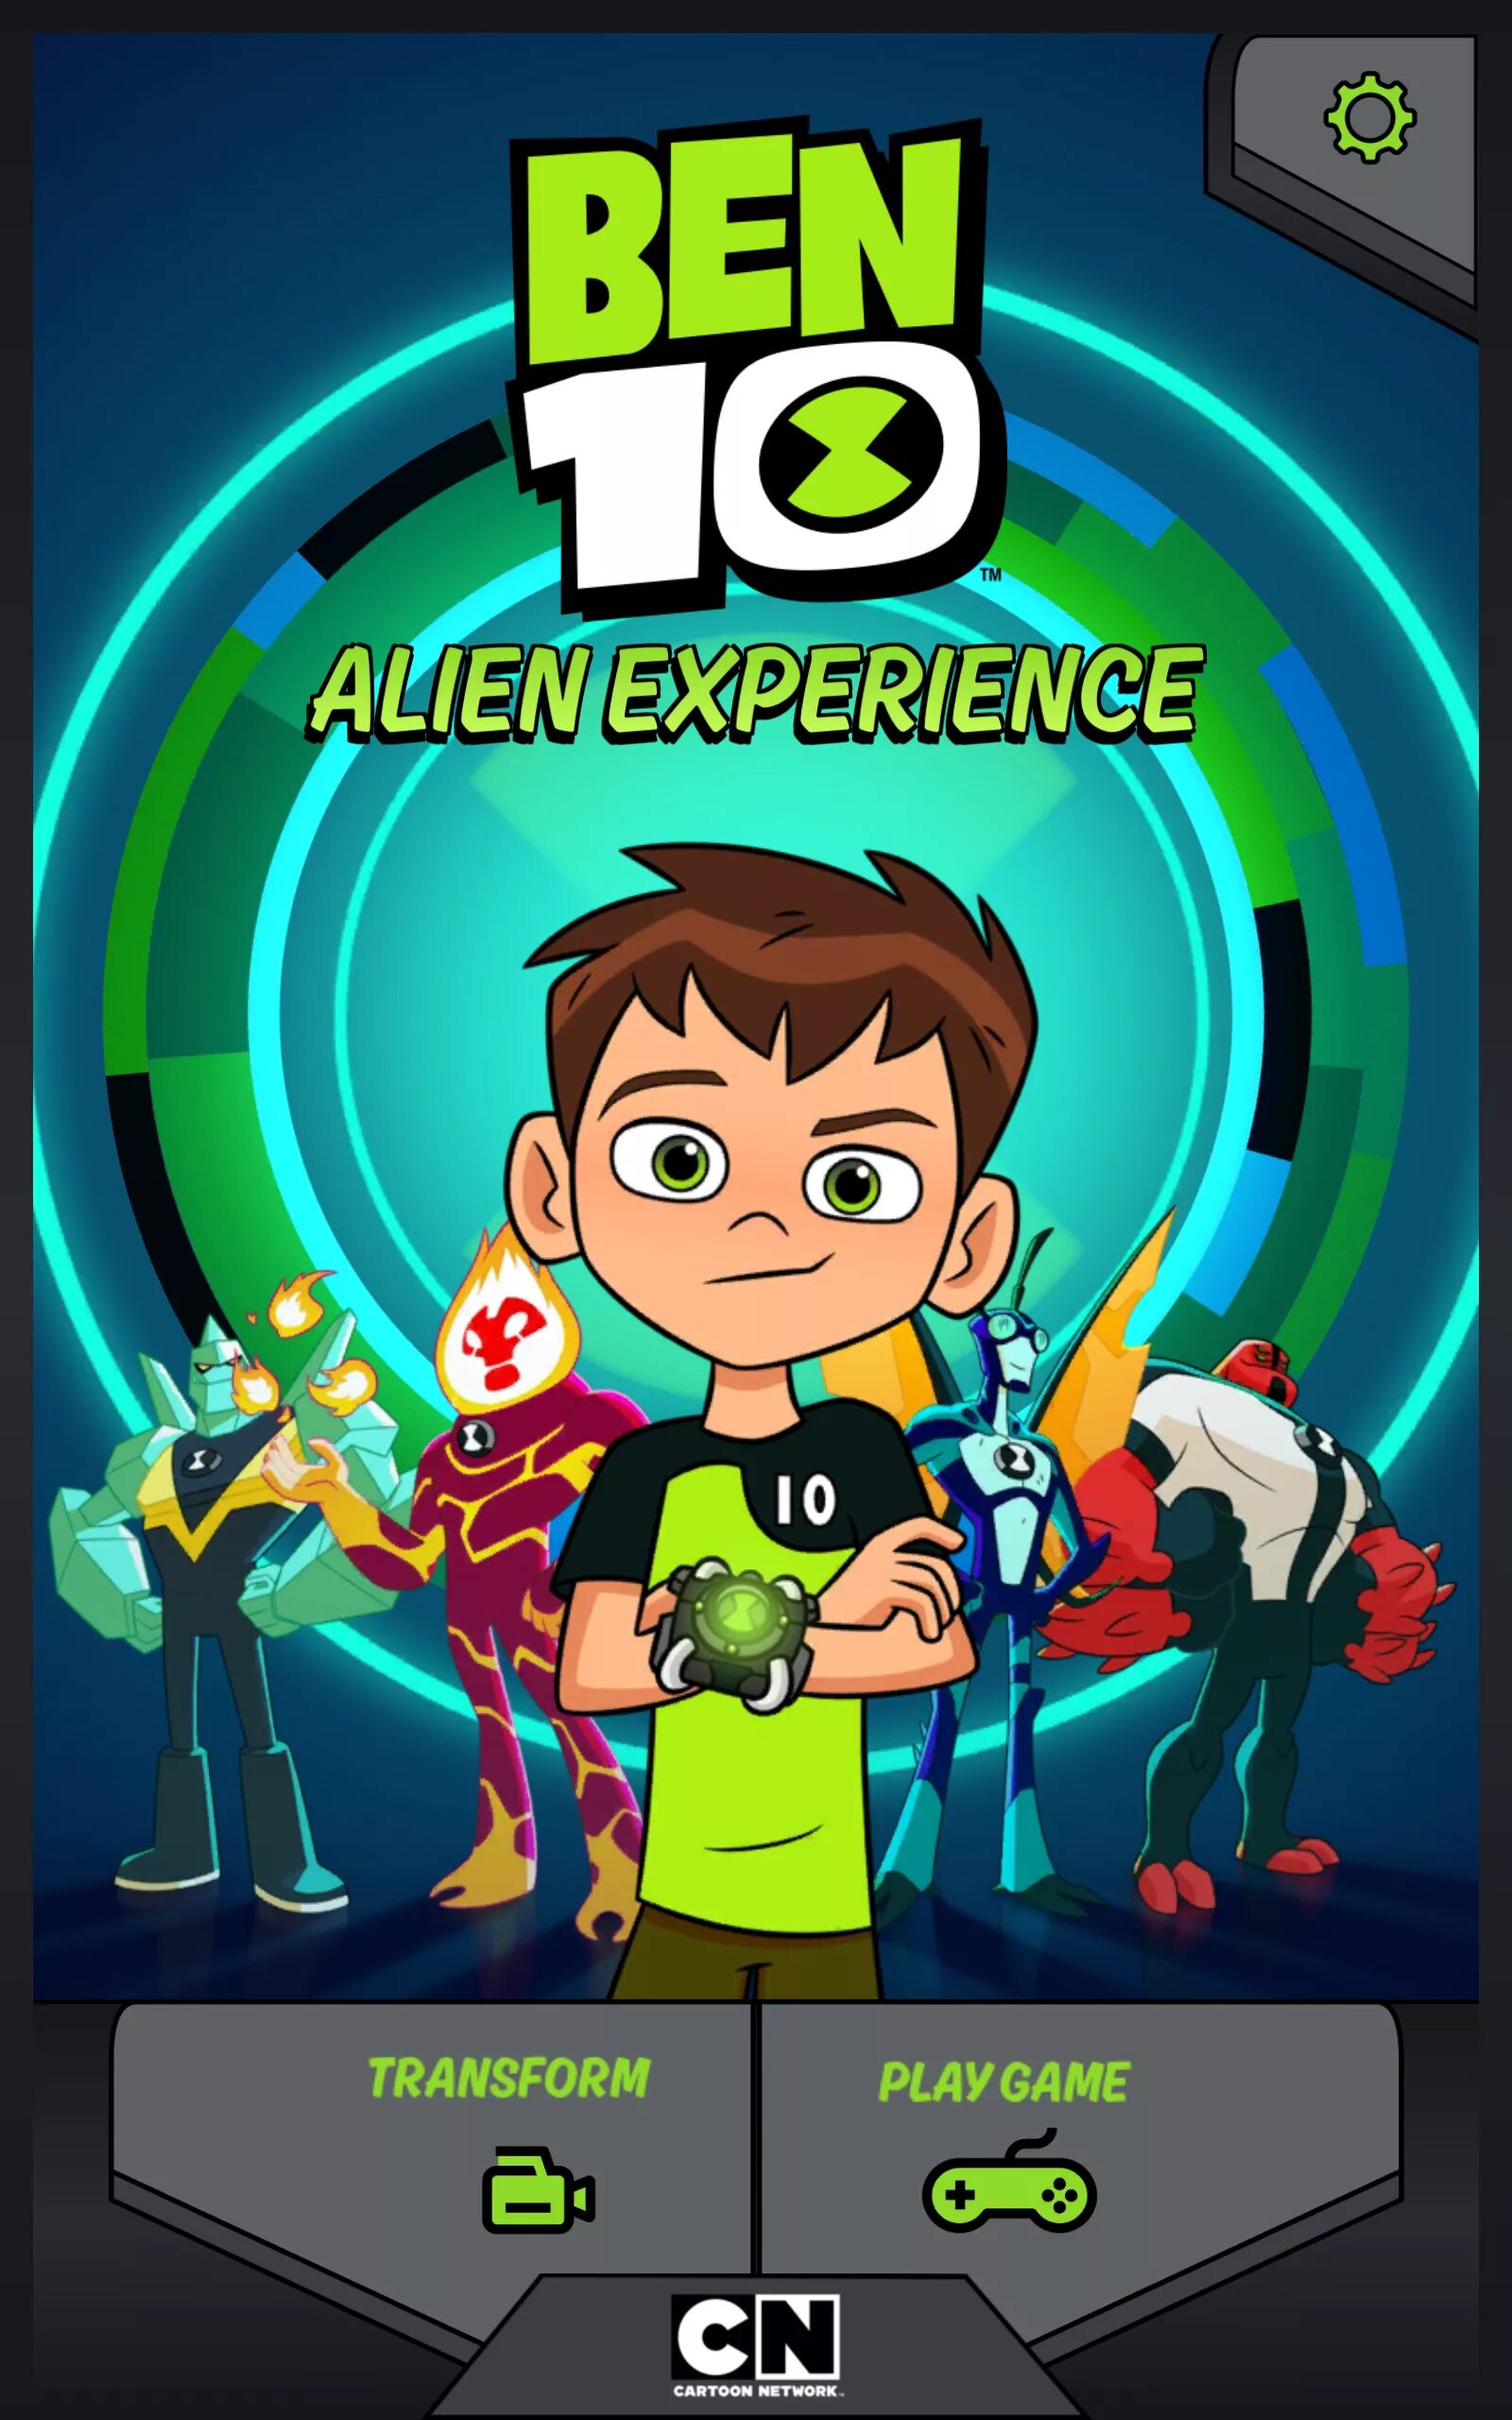 Телефоном бена игра. Бен 10 Alien experience. Бен 10 инопланетная реальность игра. Бен 10 диск. Бан в игре.